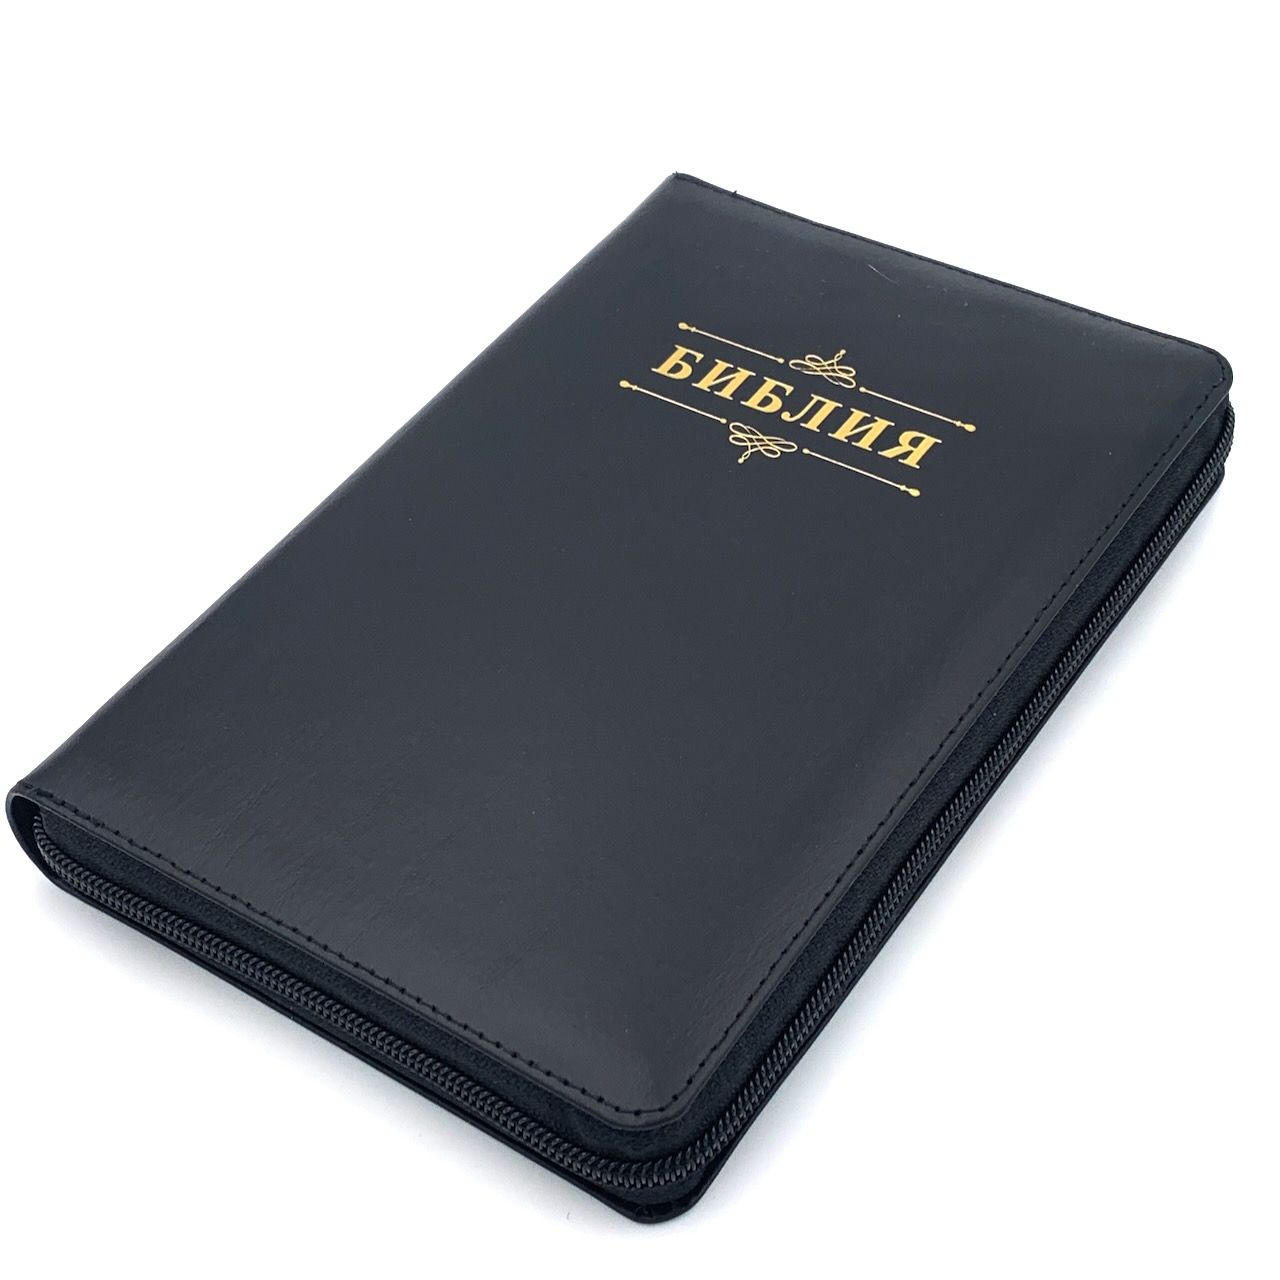 Библия 053zti код A8 надпись "Библия", кожаный переплет на молнии с индексами, цвет черный с прожилками, формат 140*202 мм